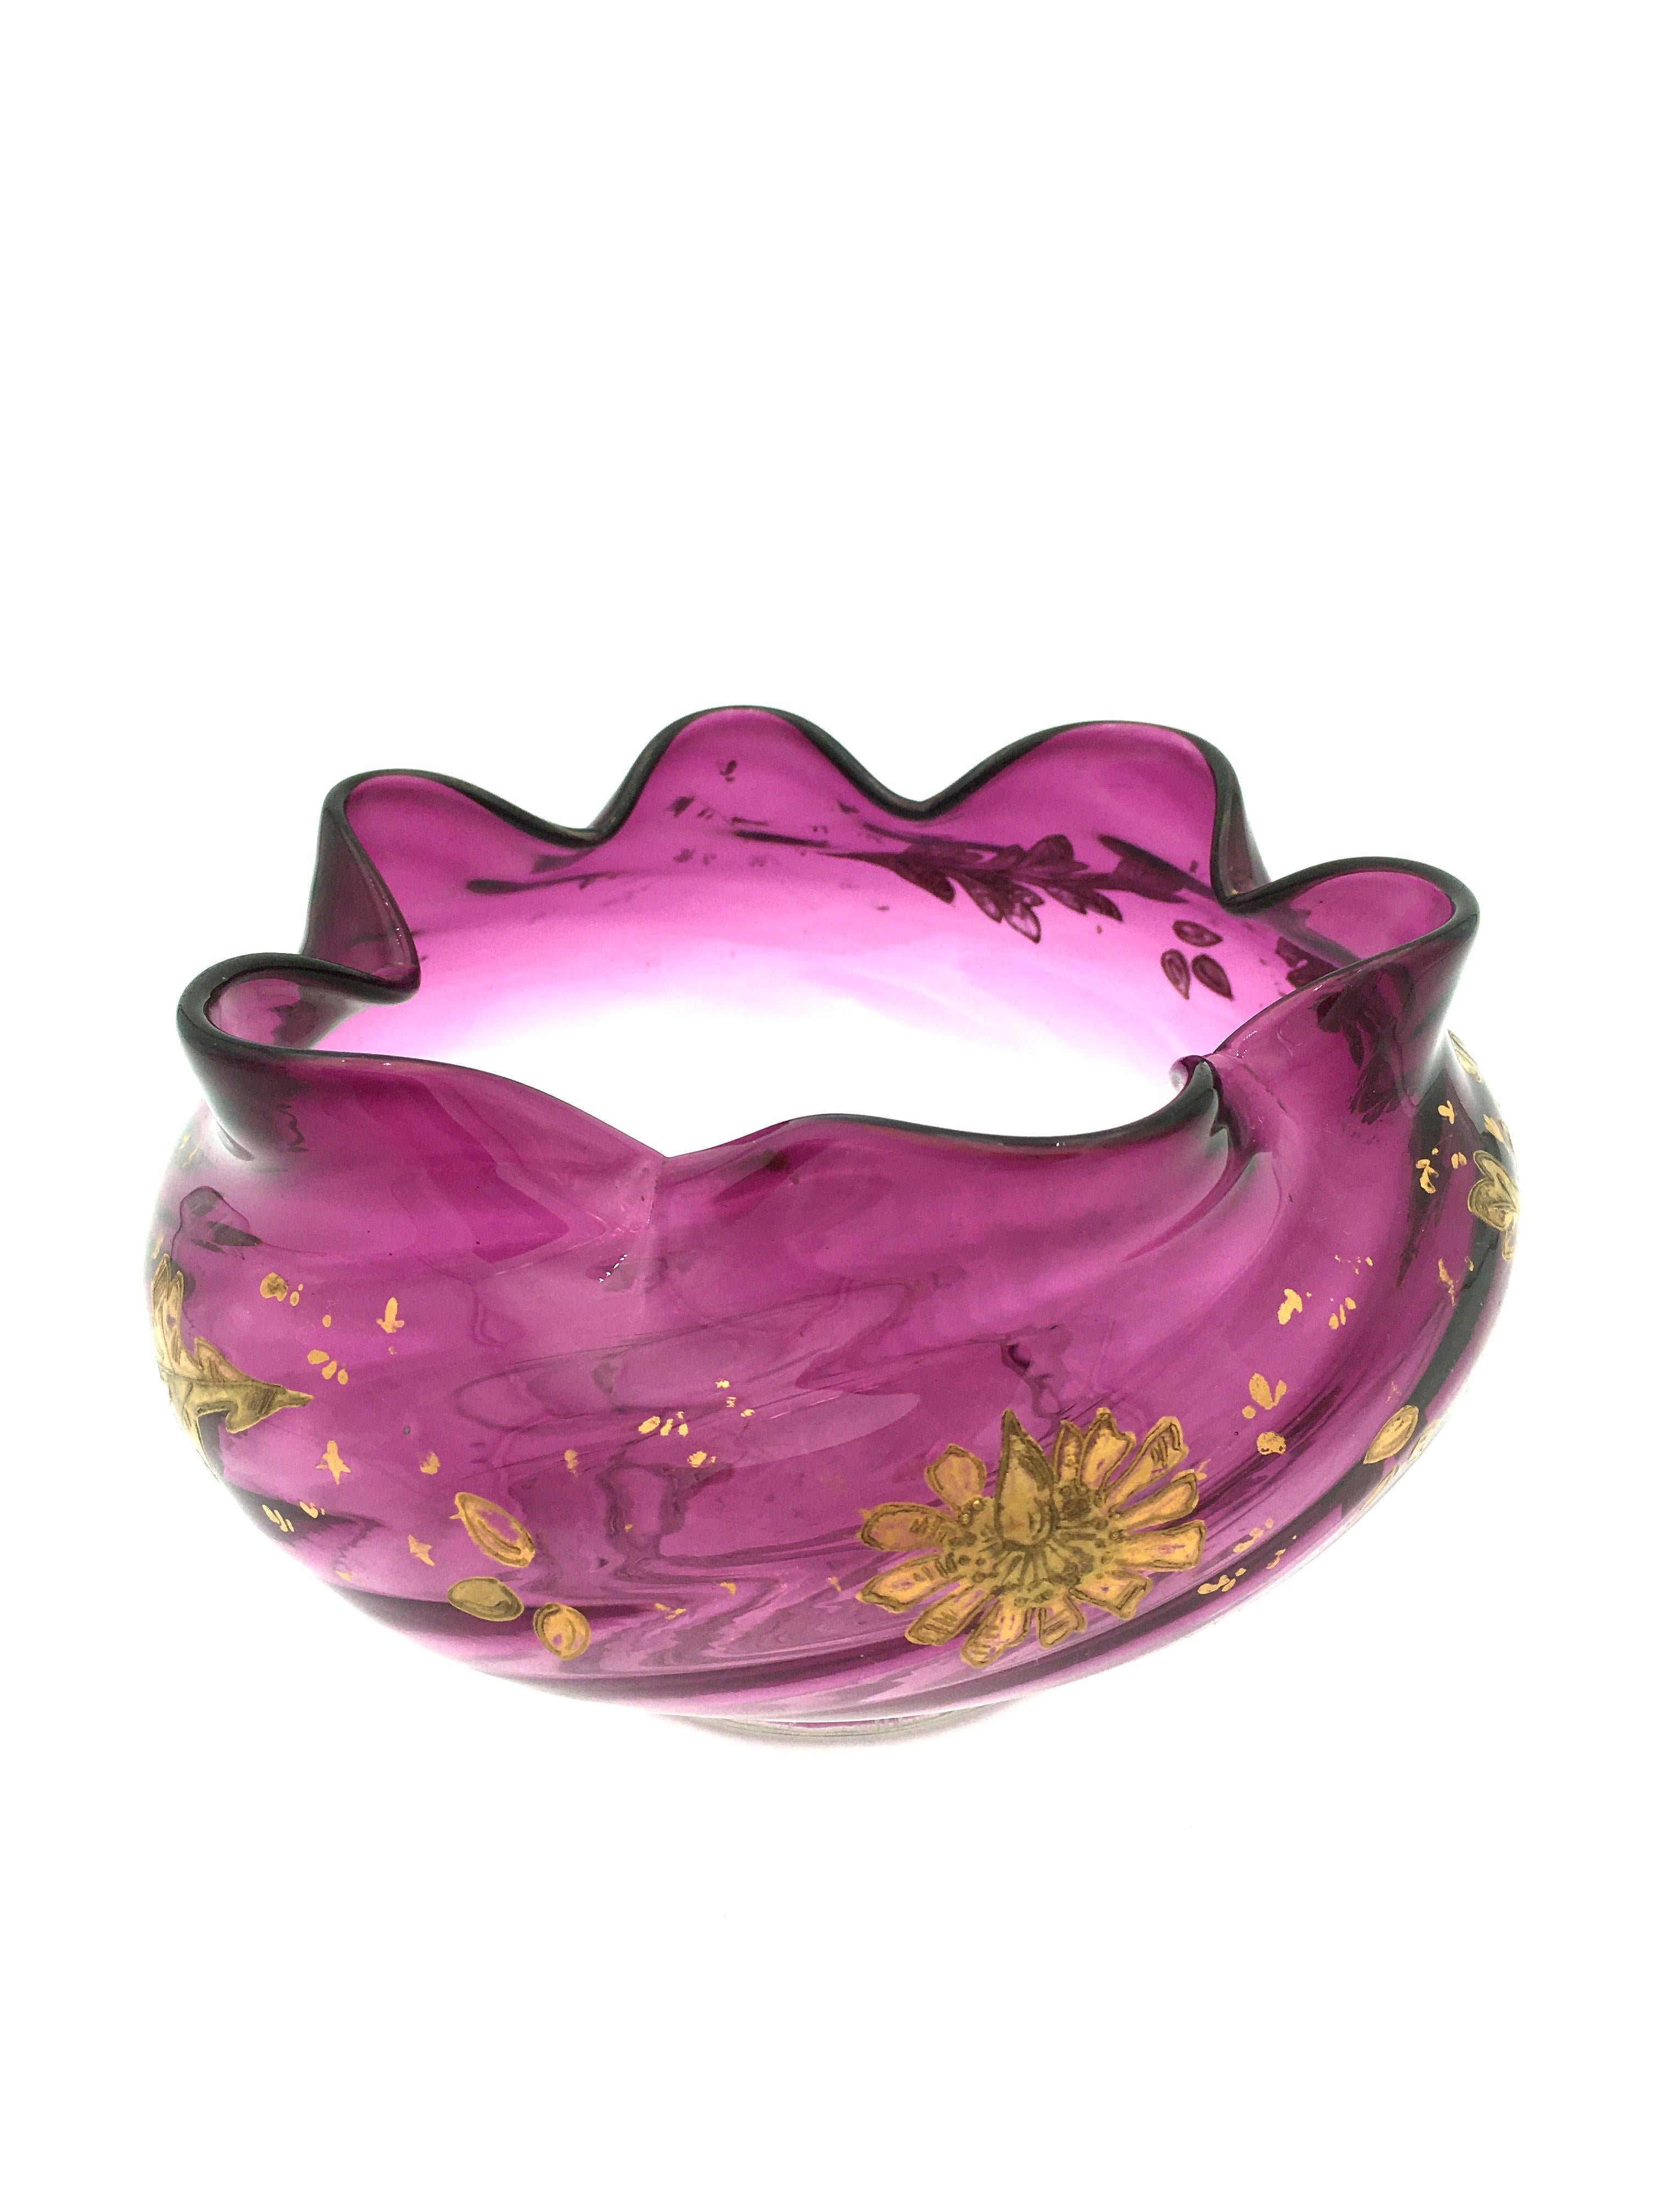 French Art Nouveau Spiral Purple Crystal Bowl, circa 1900